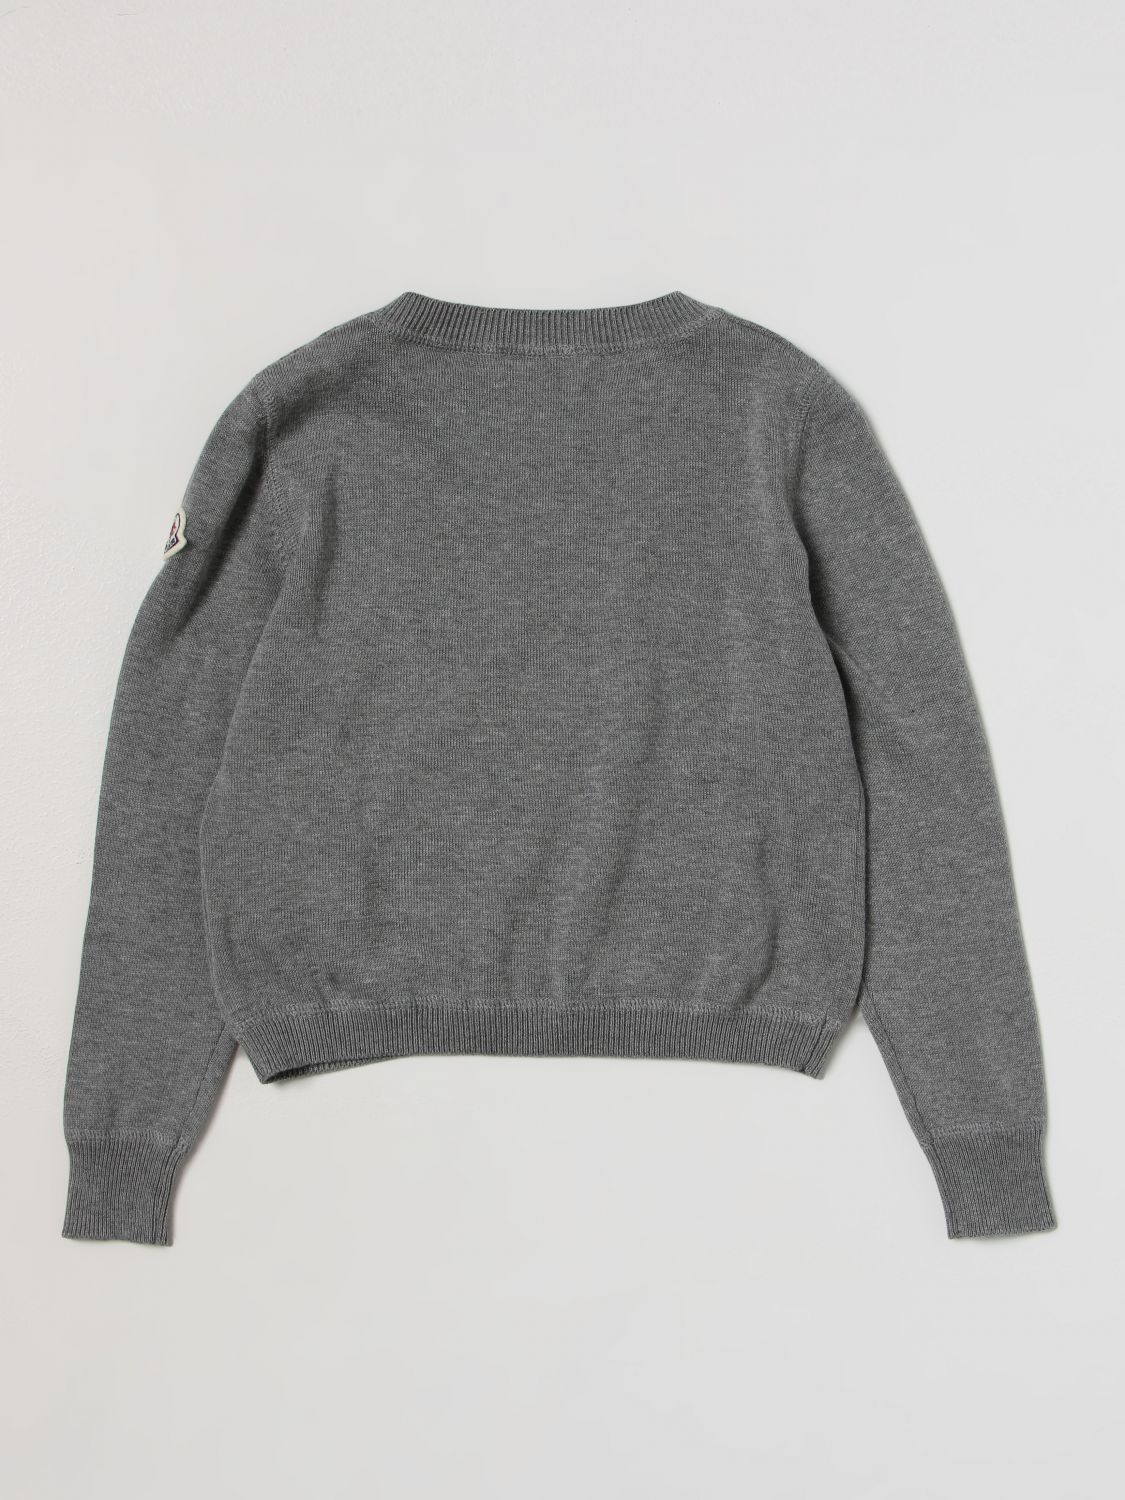 halvleder bevægelse Gøre klart MONCLER: sweater for girls - Grey | Moncler sweater 9C00005M1447 online on  GIGLIO.COM